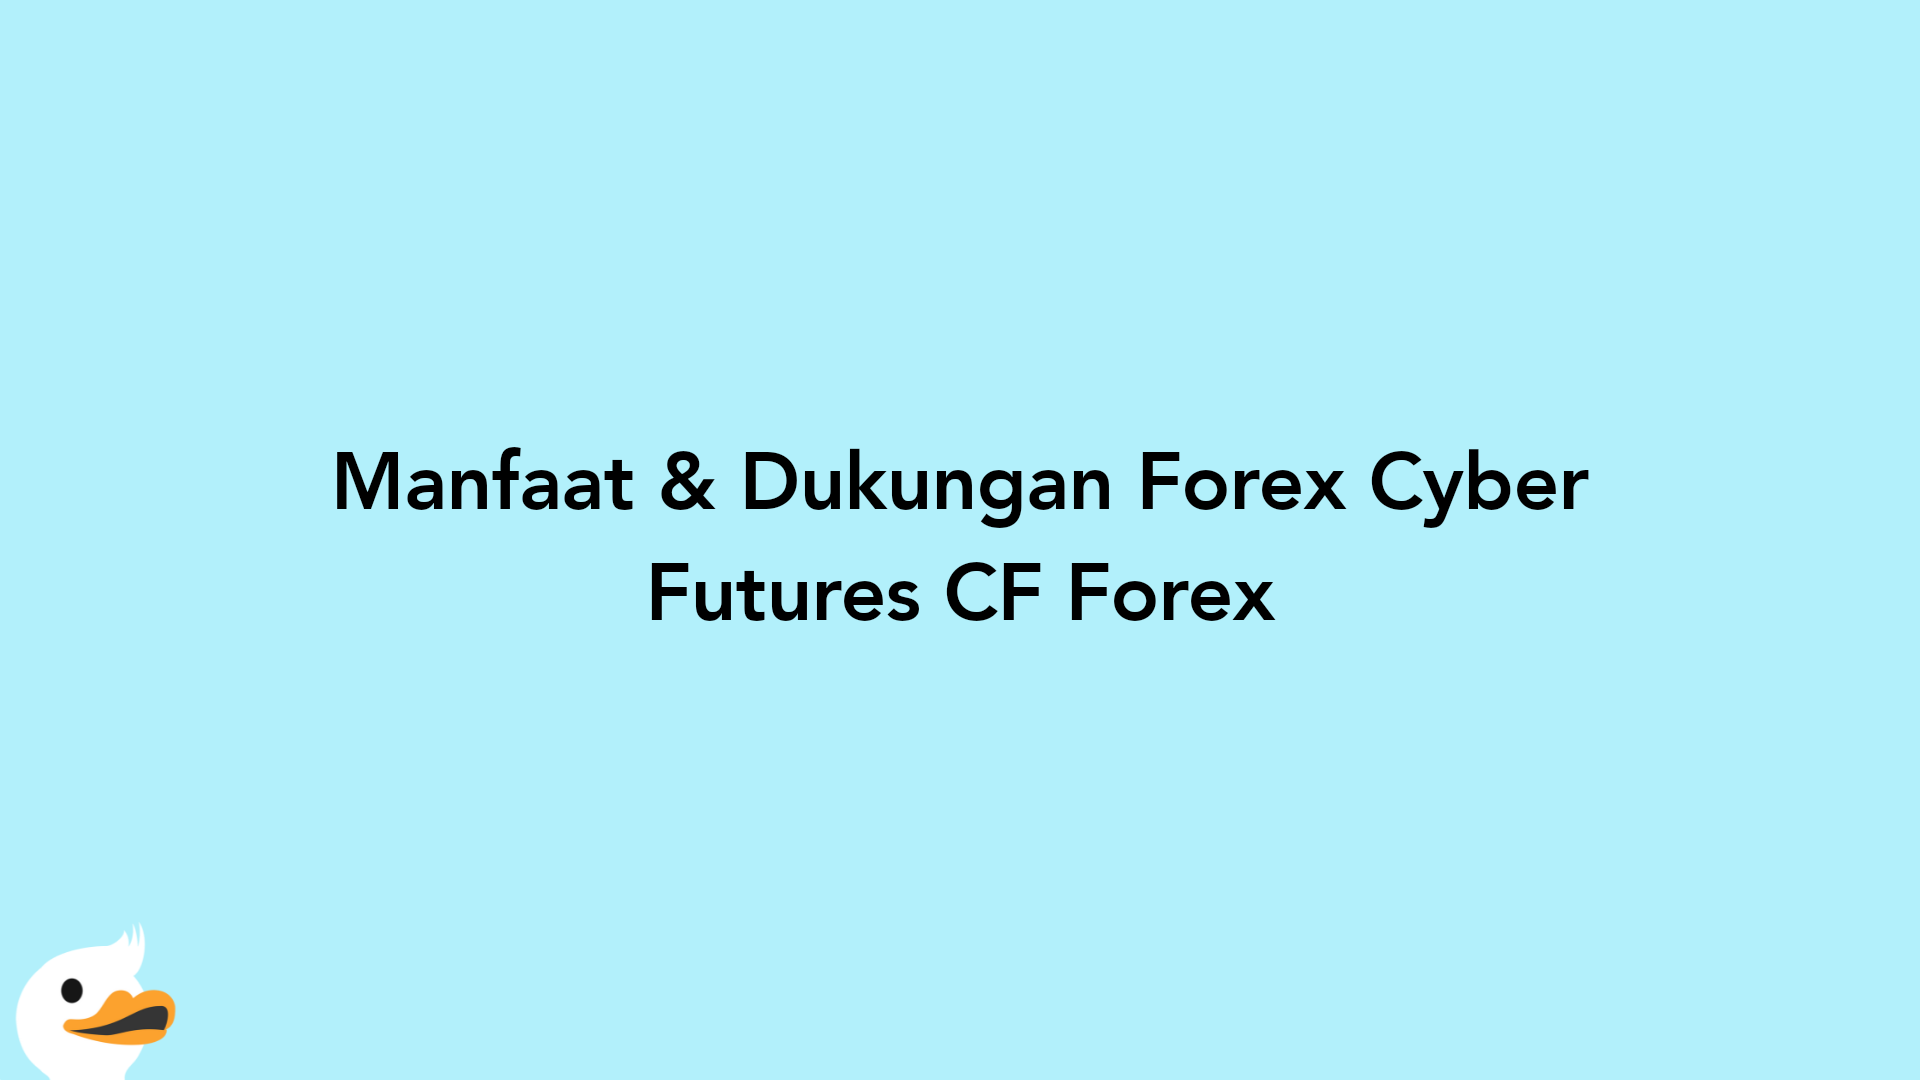 Manfaat & Dukungan Forex Cyber Futures CF Forex